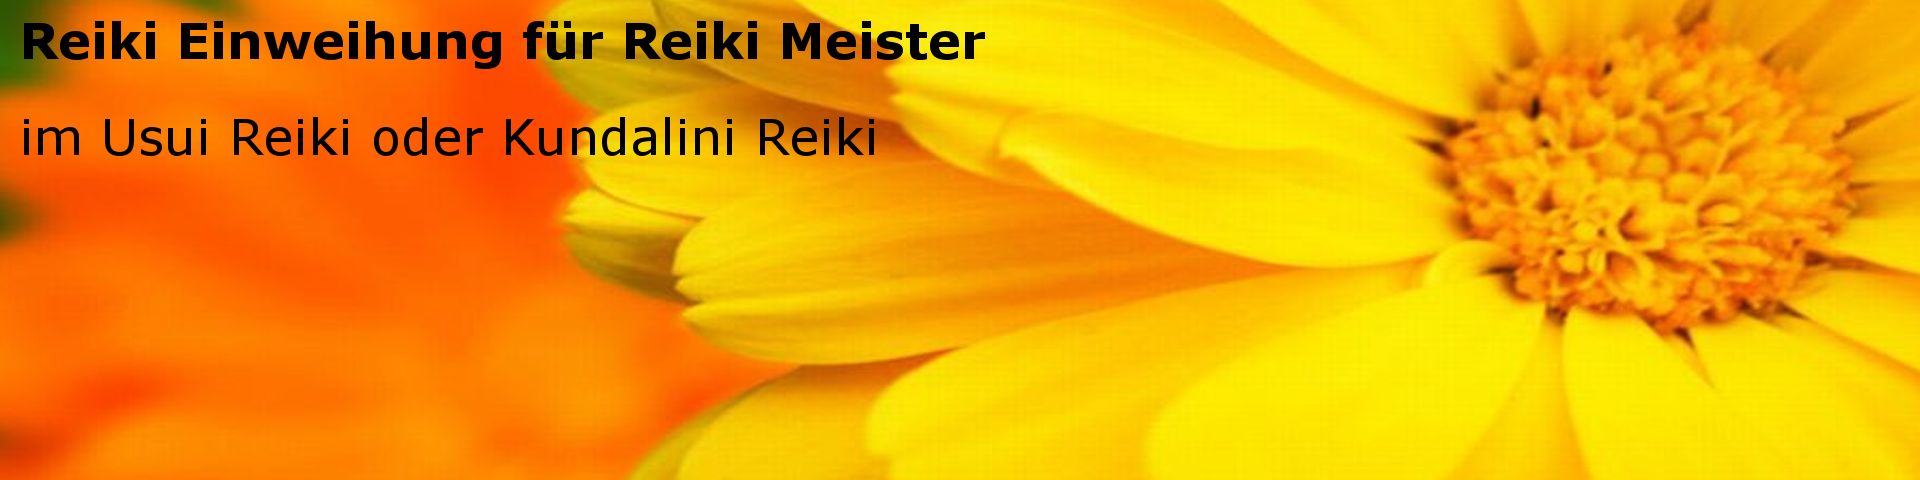 Einweihungen für Reiki Meister, dazu gehören Psychic und Meridian Reiki.